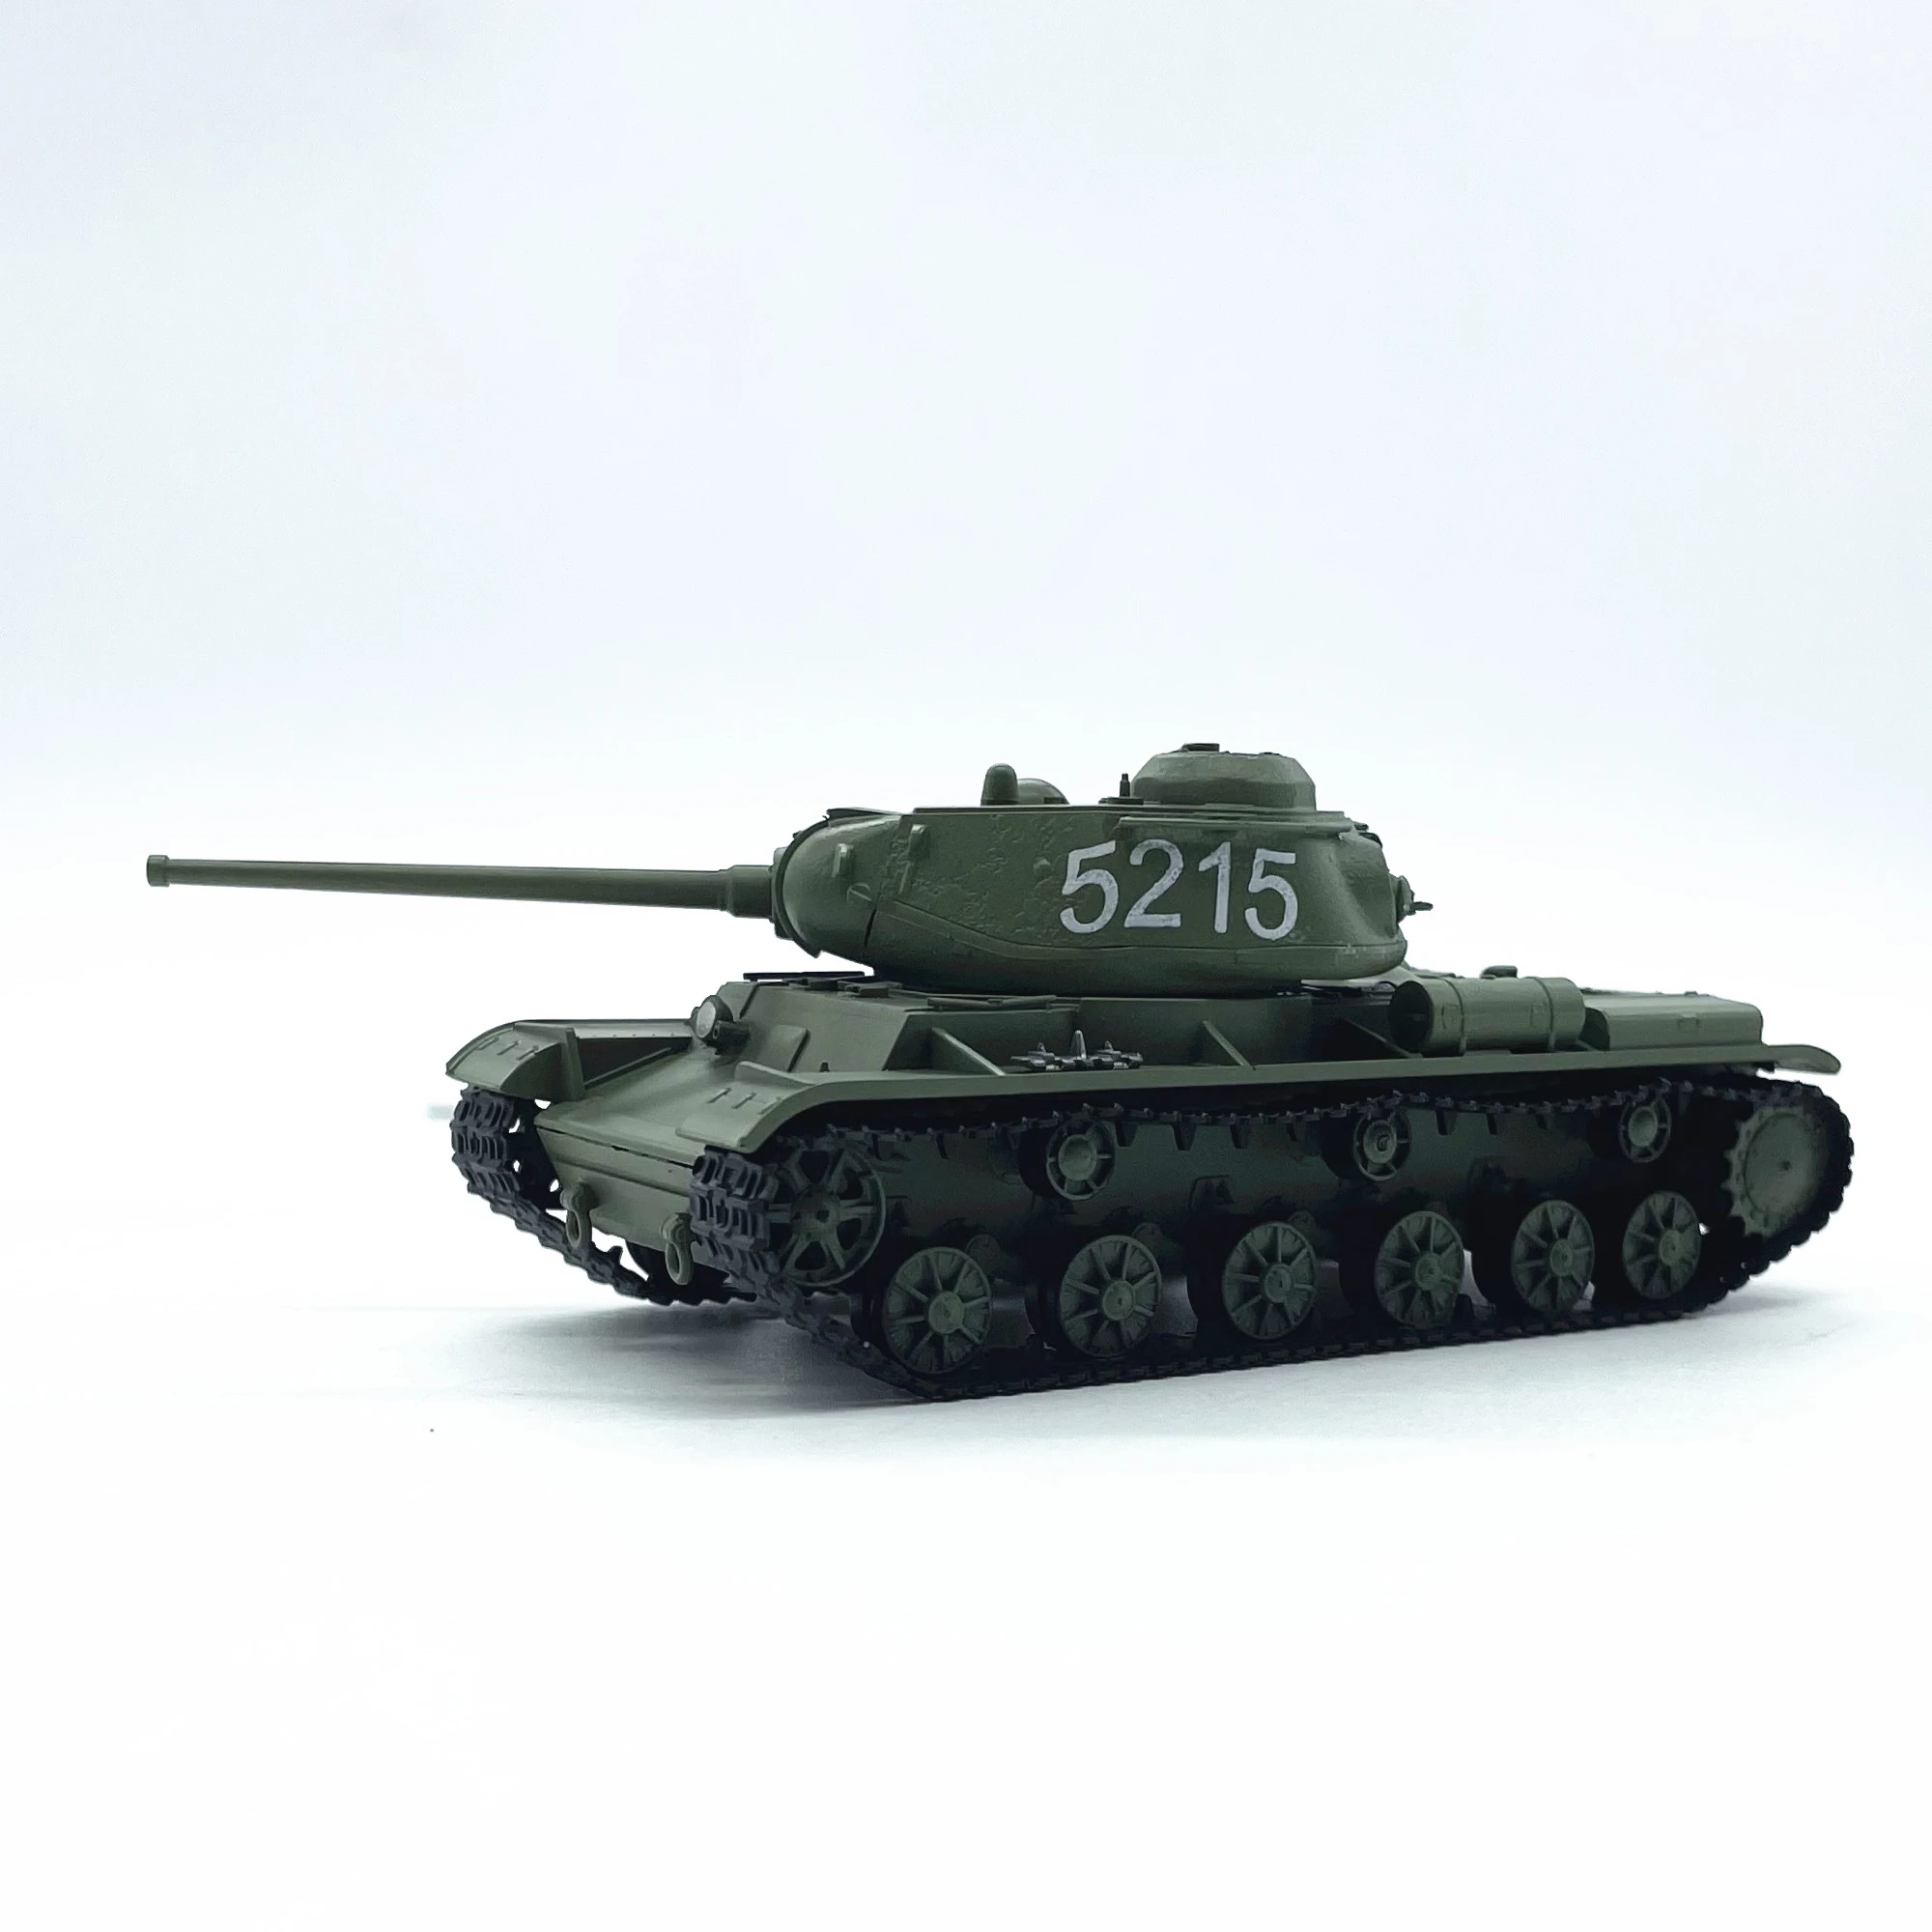 

Пластиковая модель советского искусственного боевого тяжелого танка масштаб 1:72, коллекция игрушек, имитация демонстрационного украшения